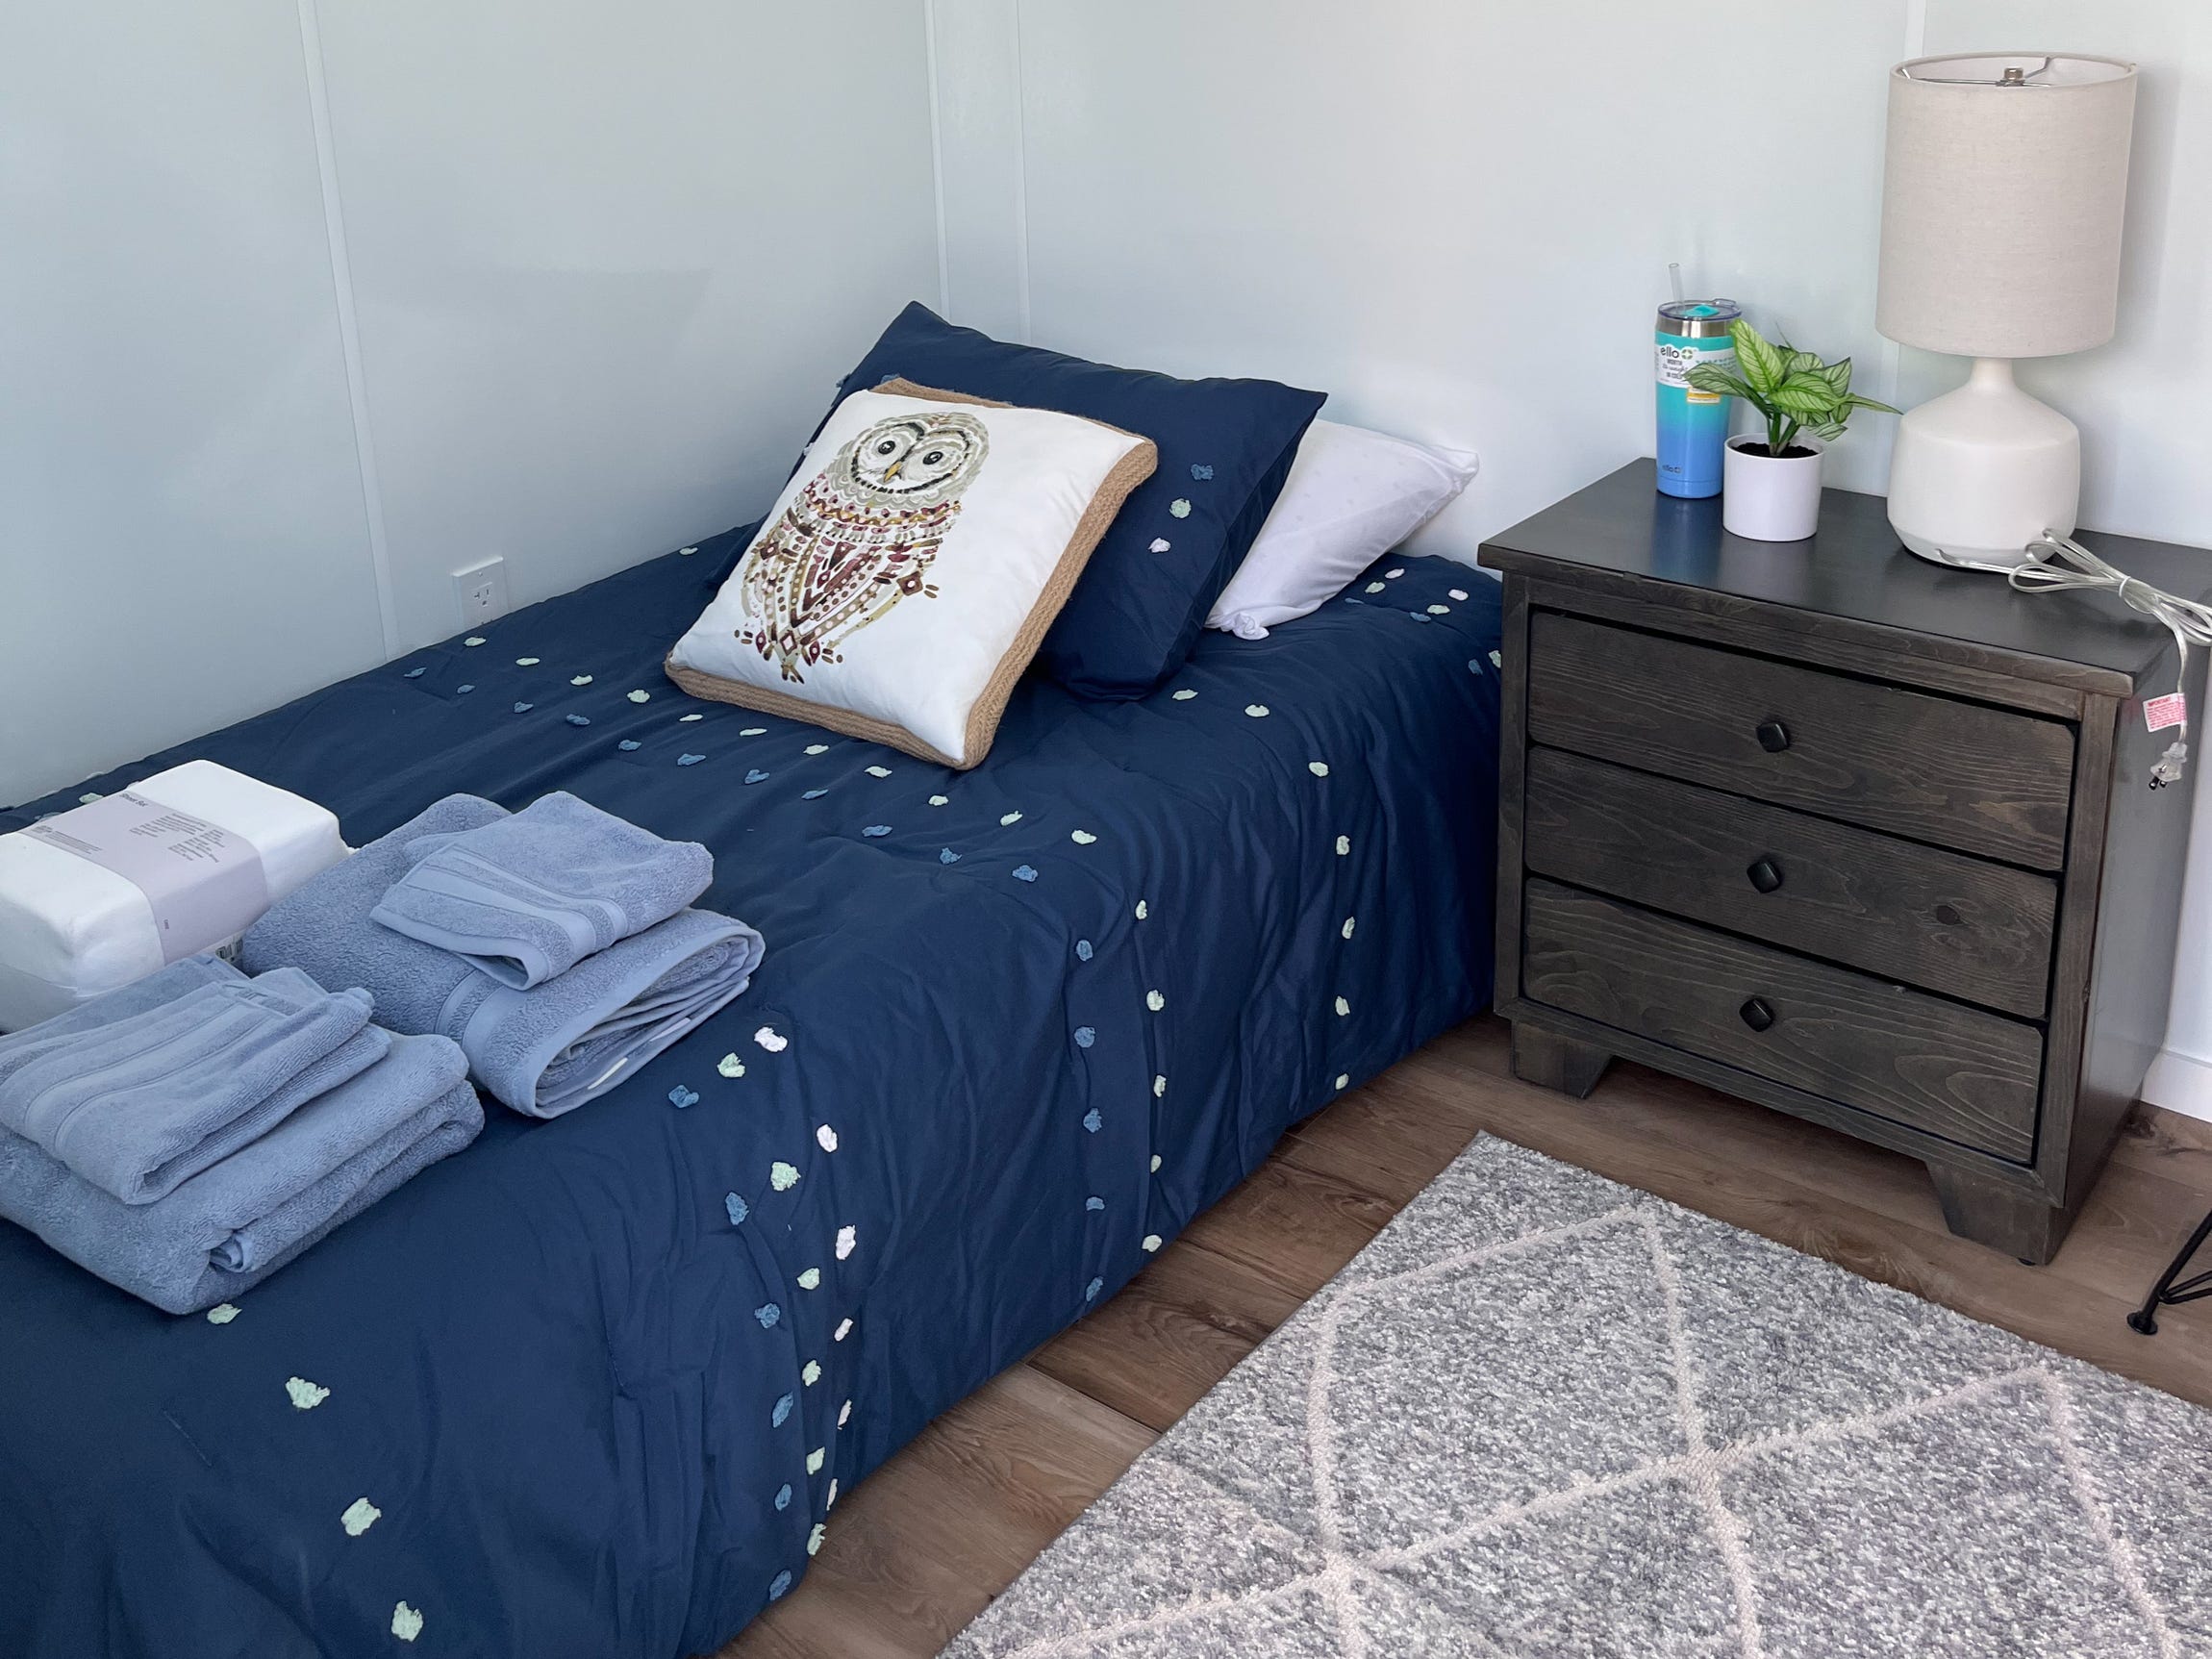 Ein Bett und ein Nachttisch in einem Tiny Home am Standort Santa Barbara von DignityMoves